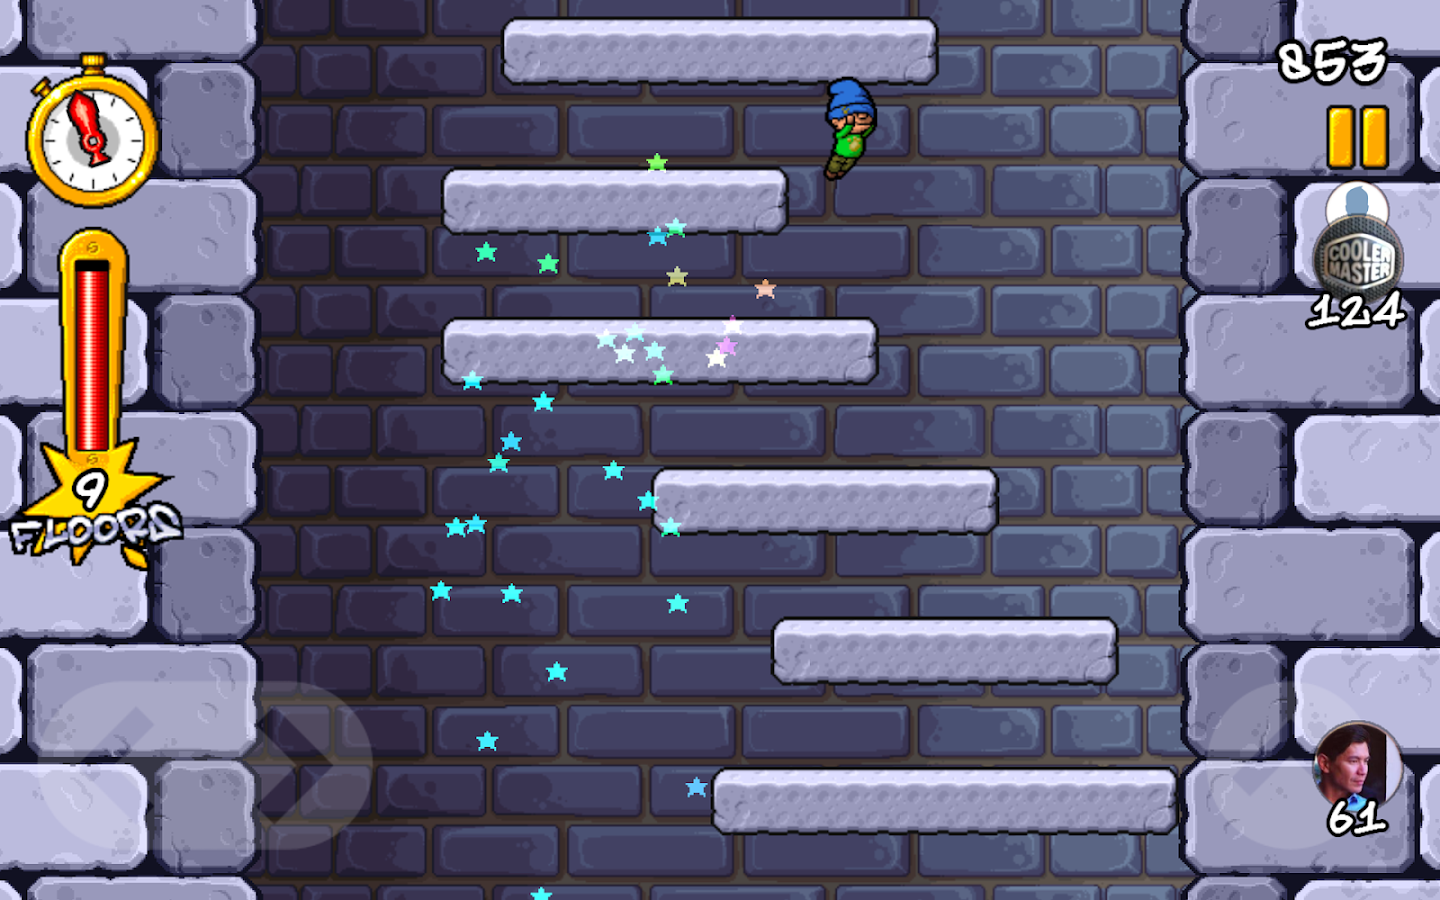    Icy Tower Retro- screenshot  